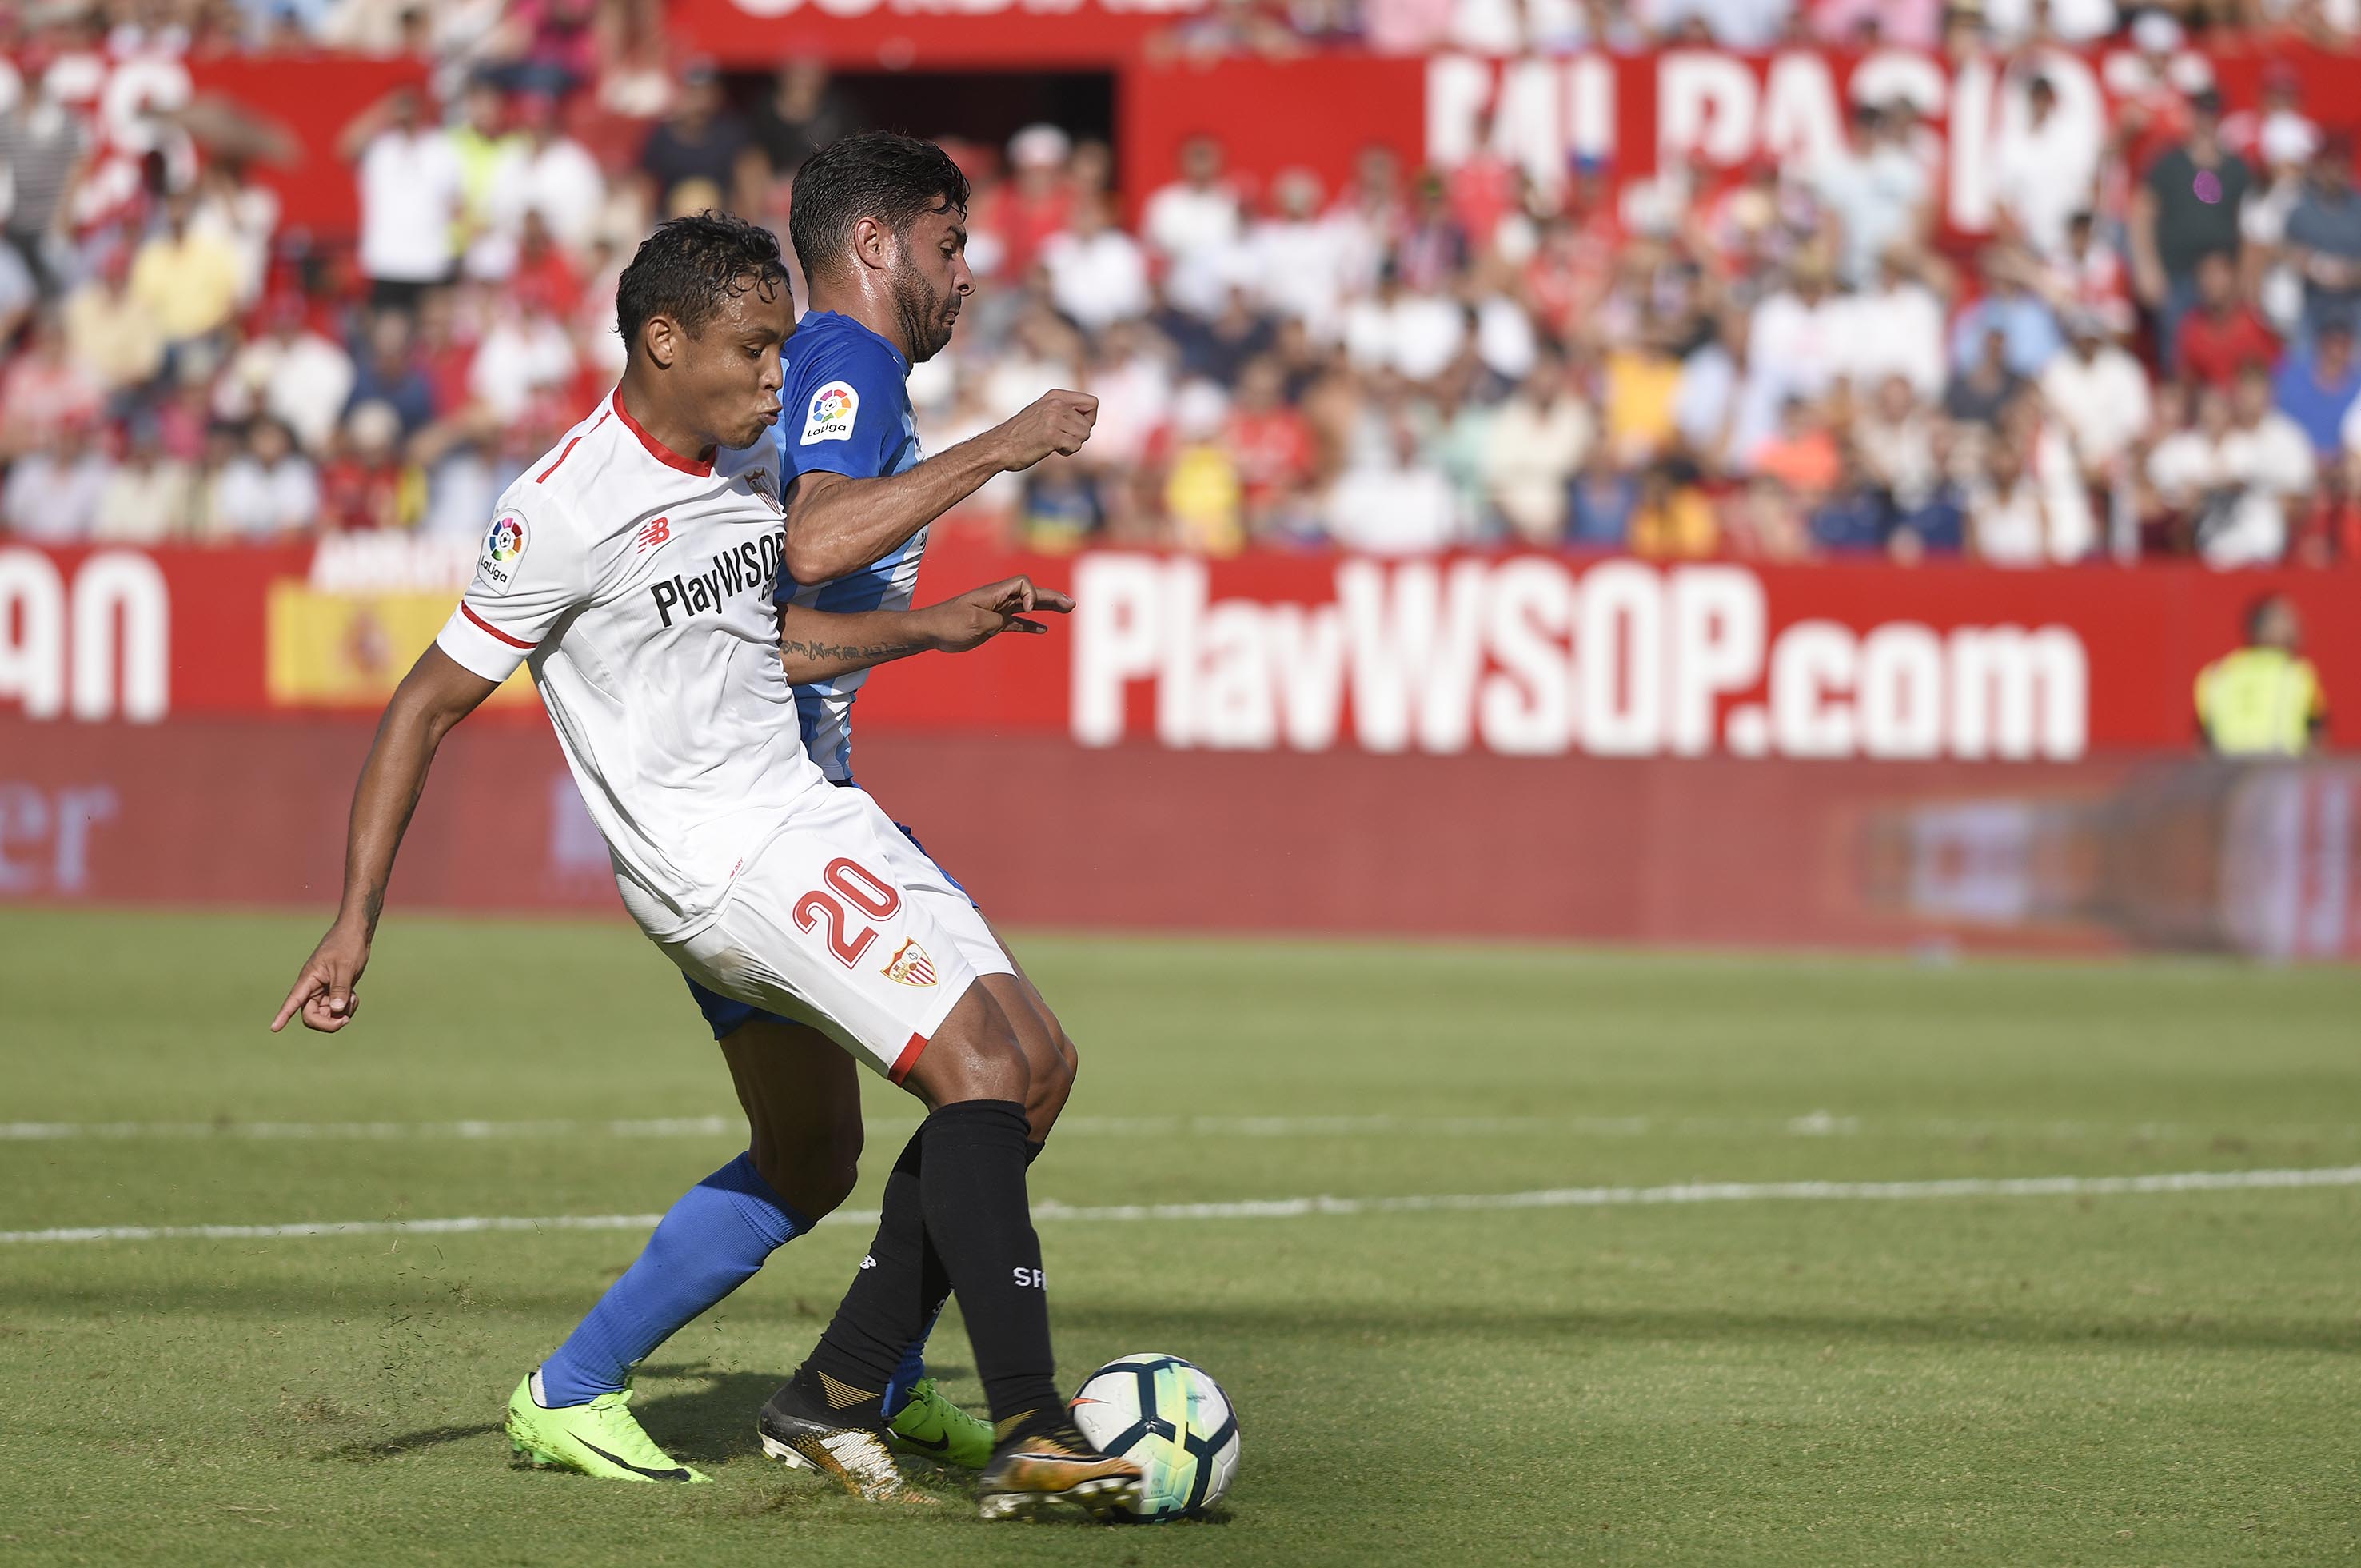 Muriel goal against Málaga CF